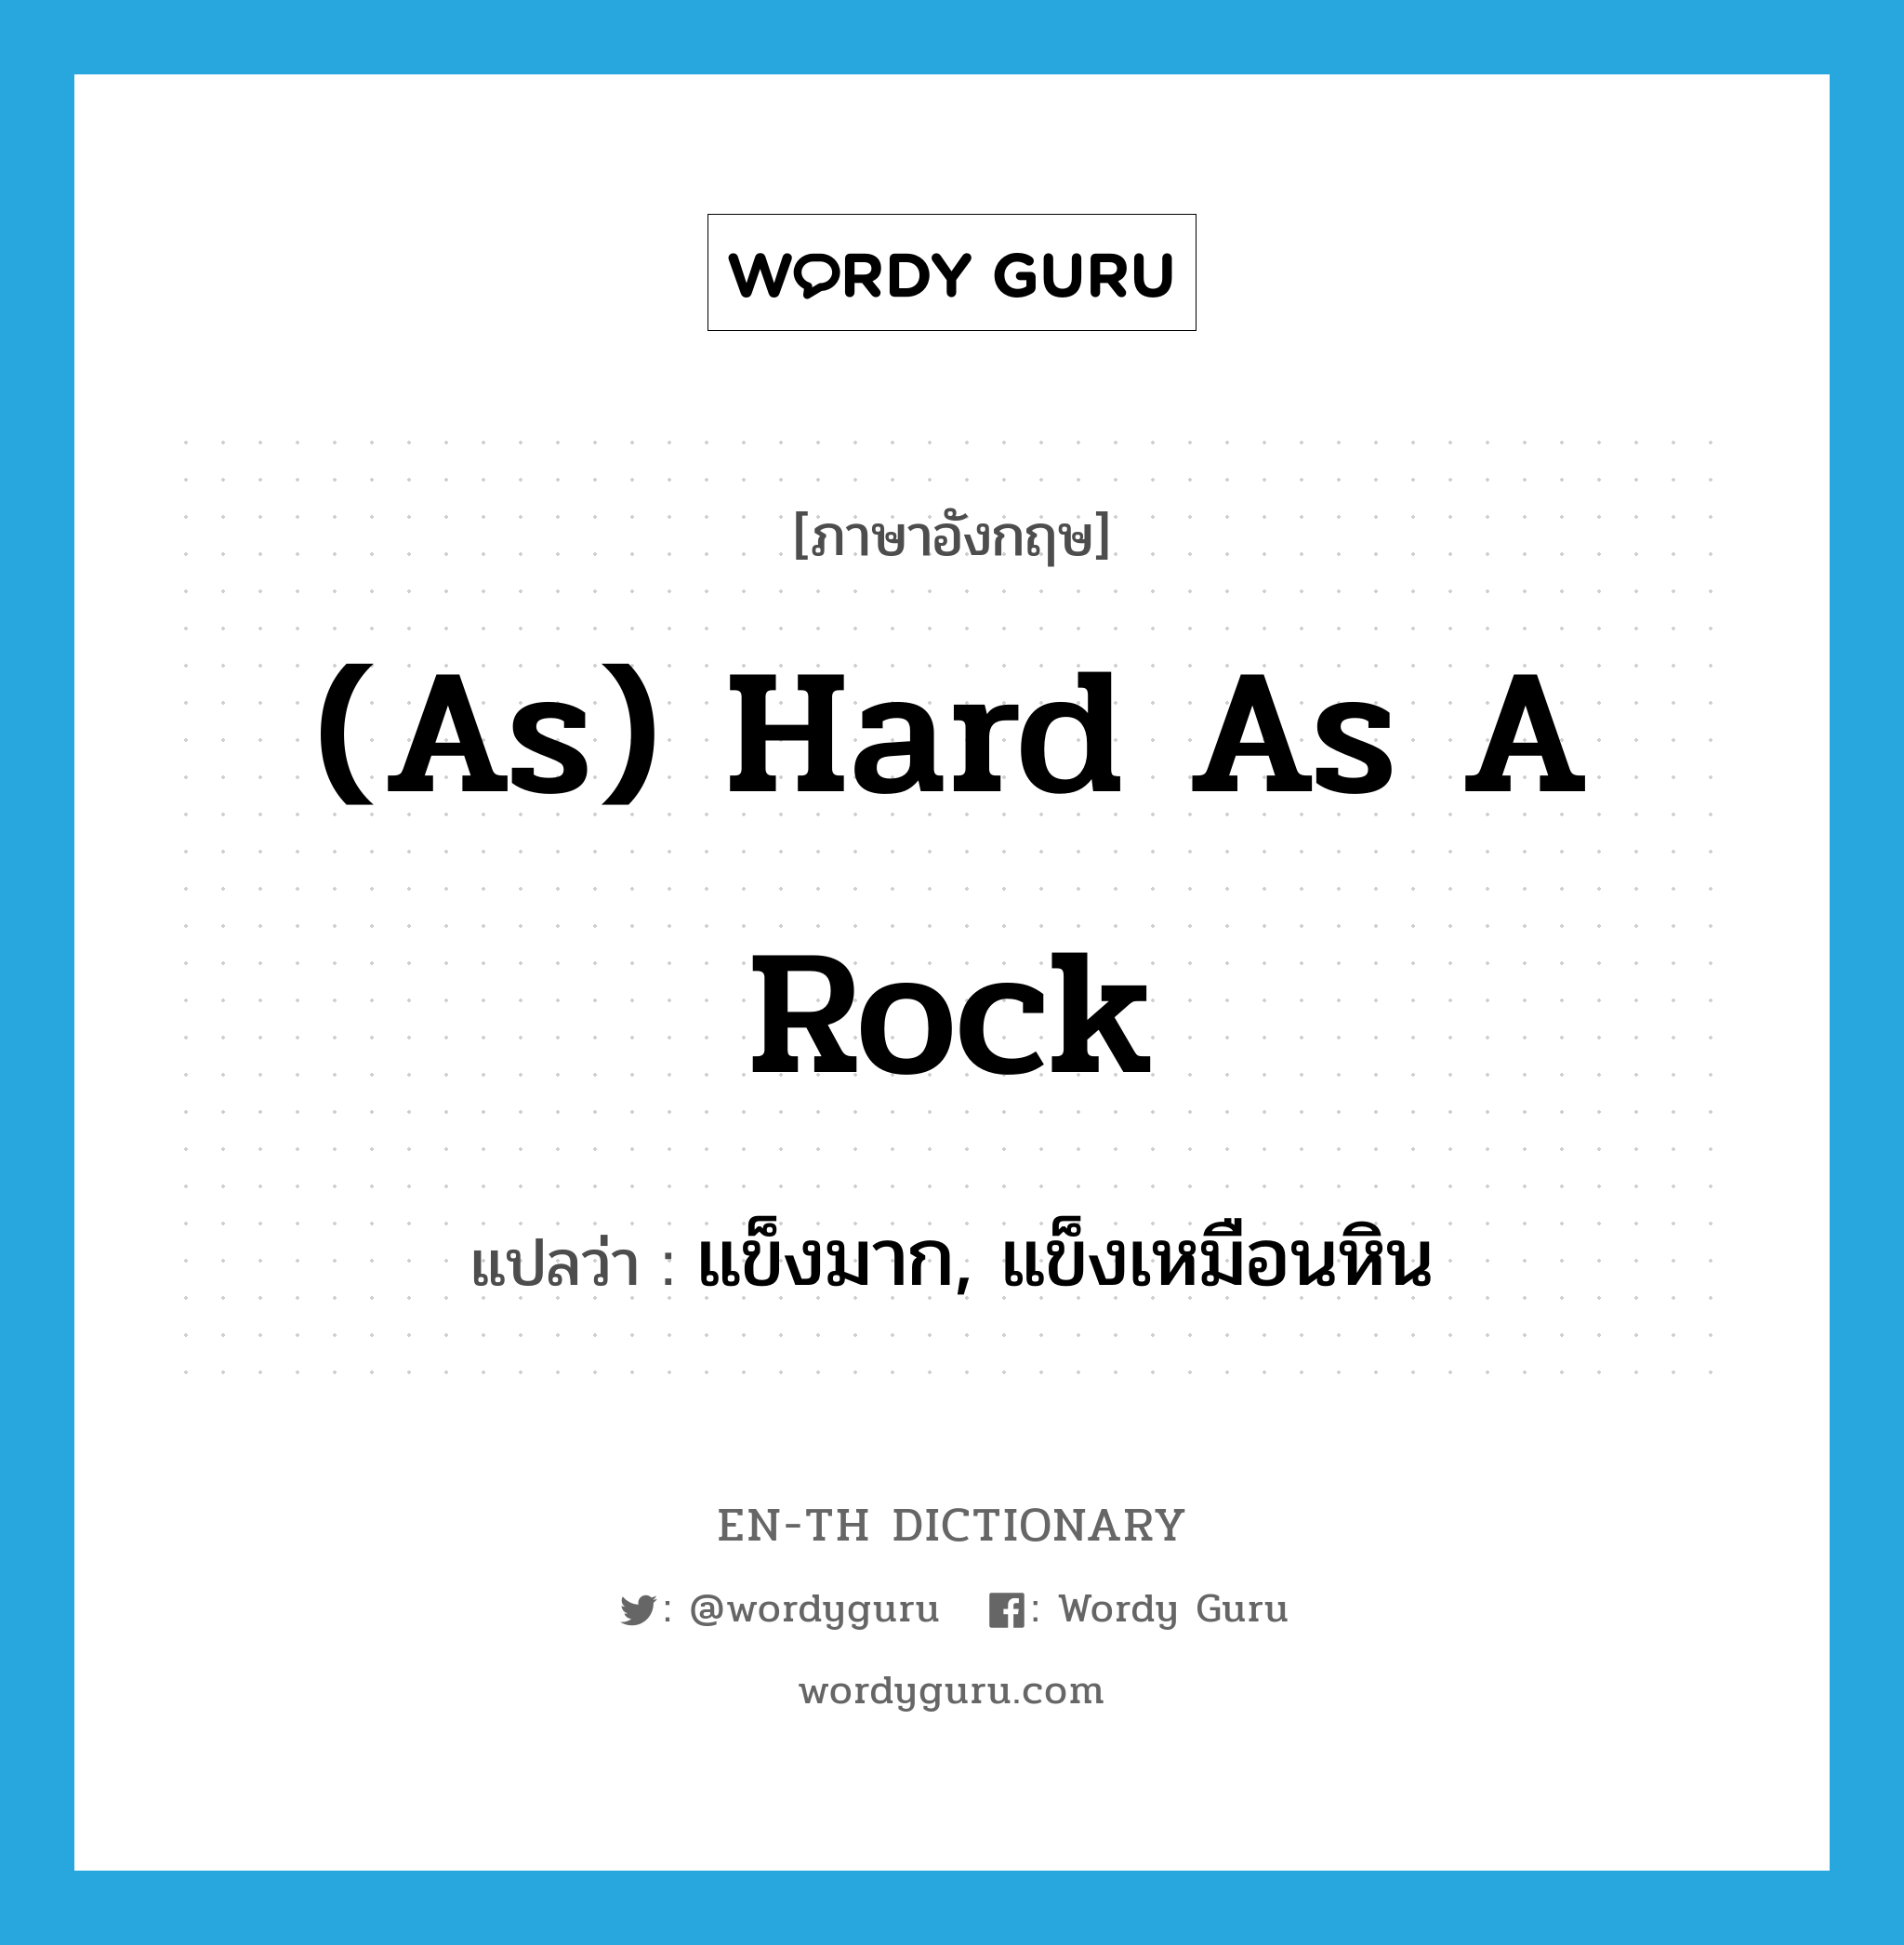 แข็งมาก, แข็งเหมือนหิน ภาษาอังกฤษ?, คำศัพท์ภาษาอังกฤษ แข็งมาก, แข็งเหมือนหิน แปลว่า (as) hard as a rock ประเภท IDM หมวด IDM